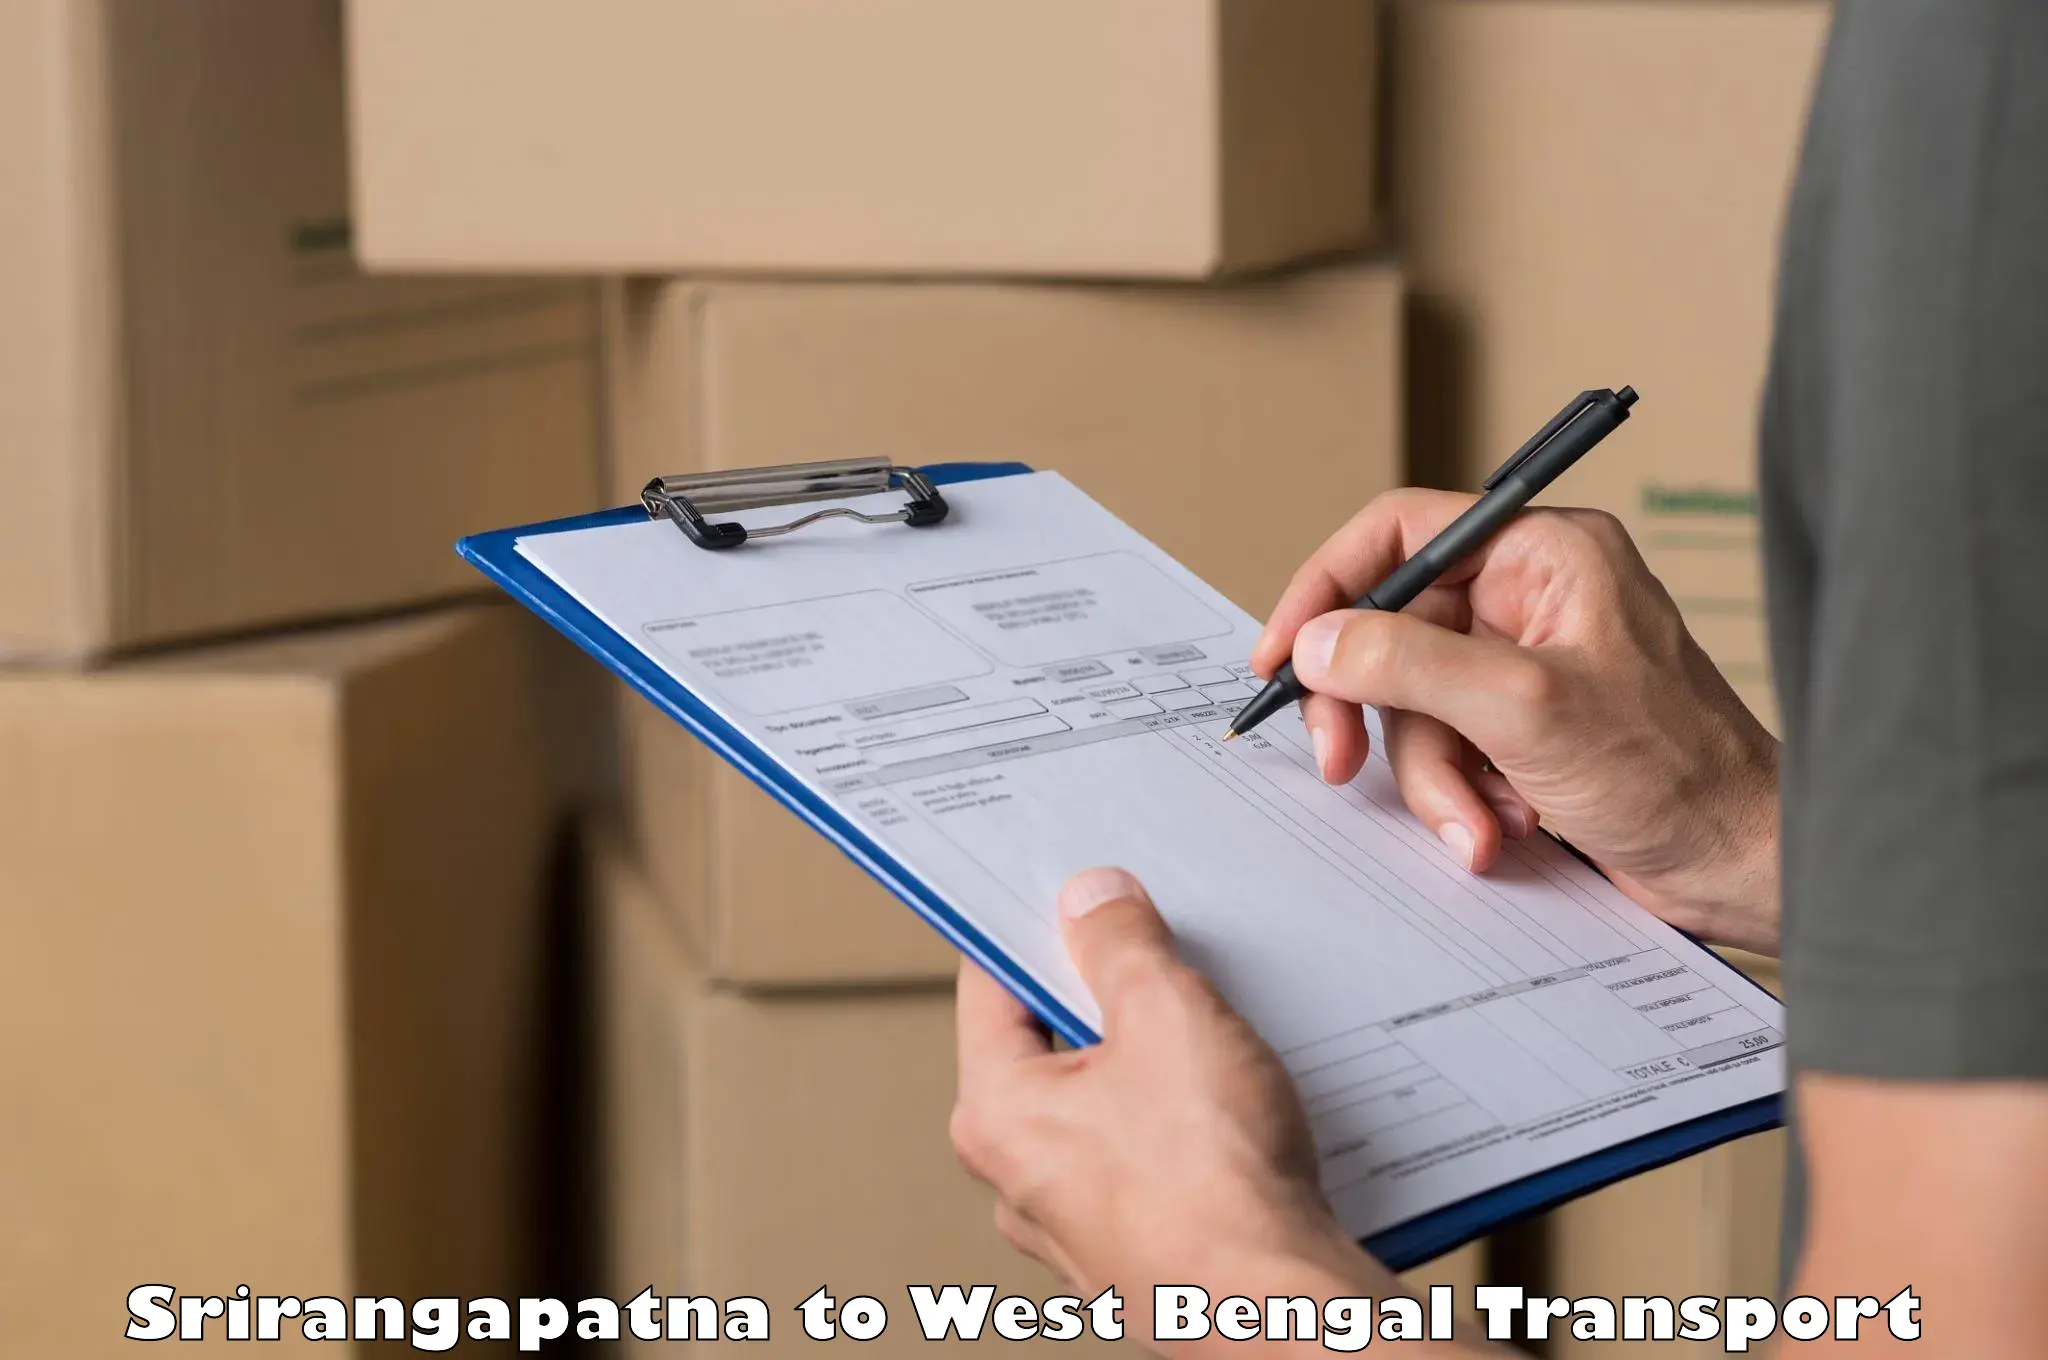 Furniture transport service Srirangapatna to Bongaon